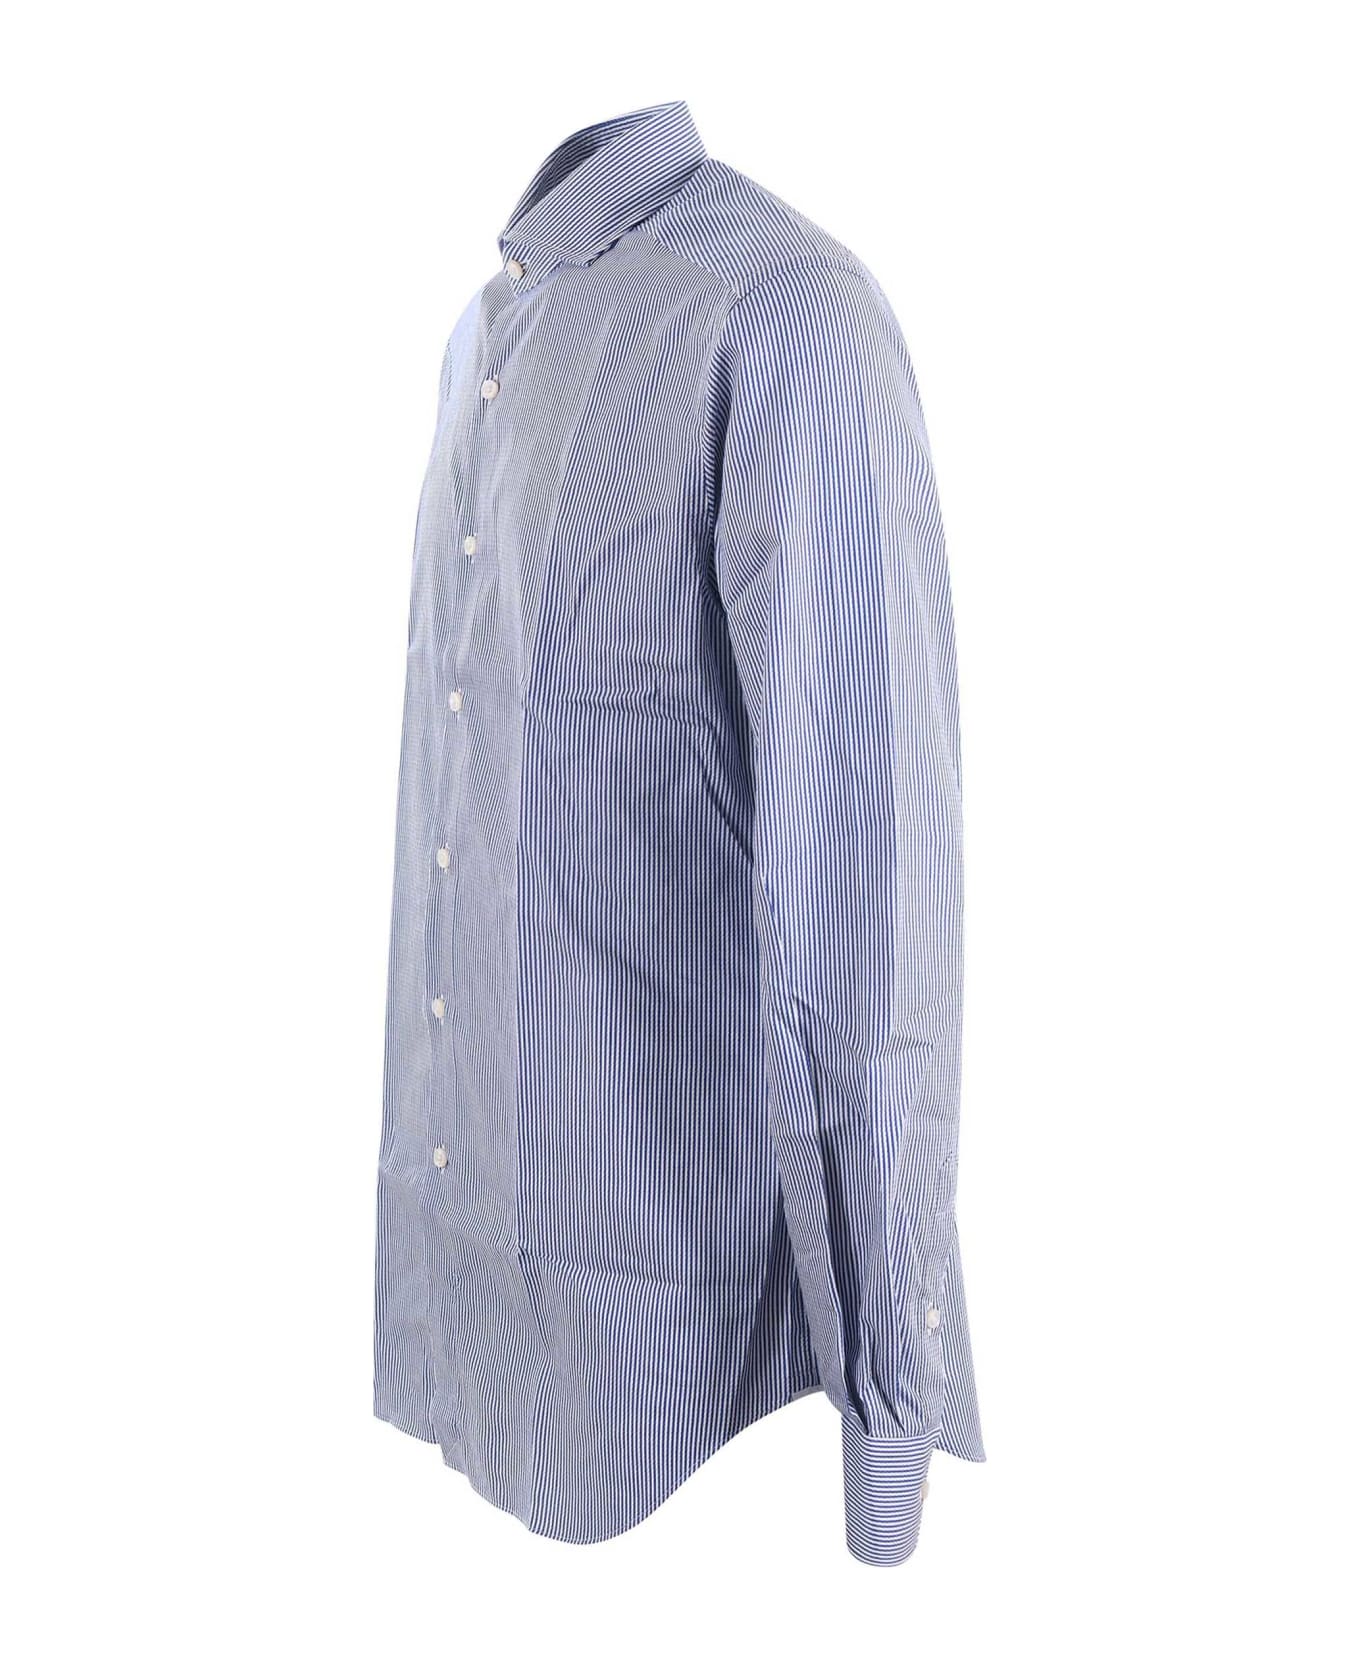 Xacus Shirt - Bianco/blu シャツ